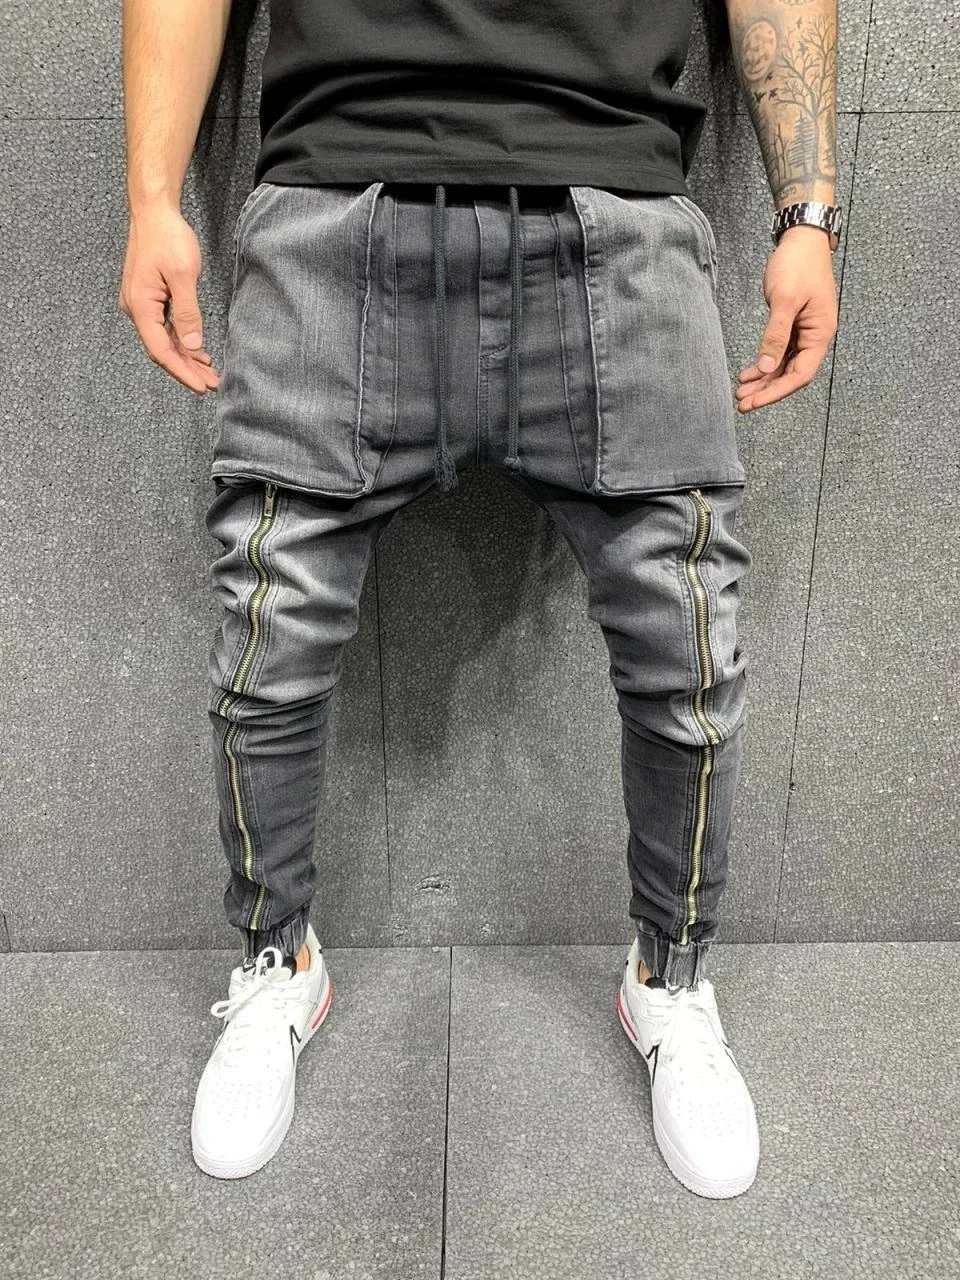 TPJB Мужские брюки в стиле хип-хоп, обтягивающие джинсы с большим карманом, джинсы на молнии, тонкие джинсы высокого качества, повседневные спортивные джинсы-корсеты M-3XL